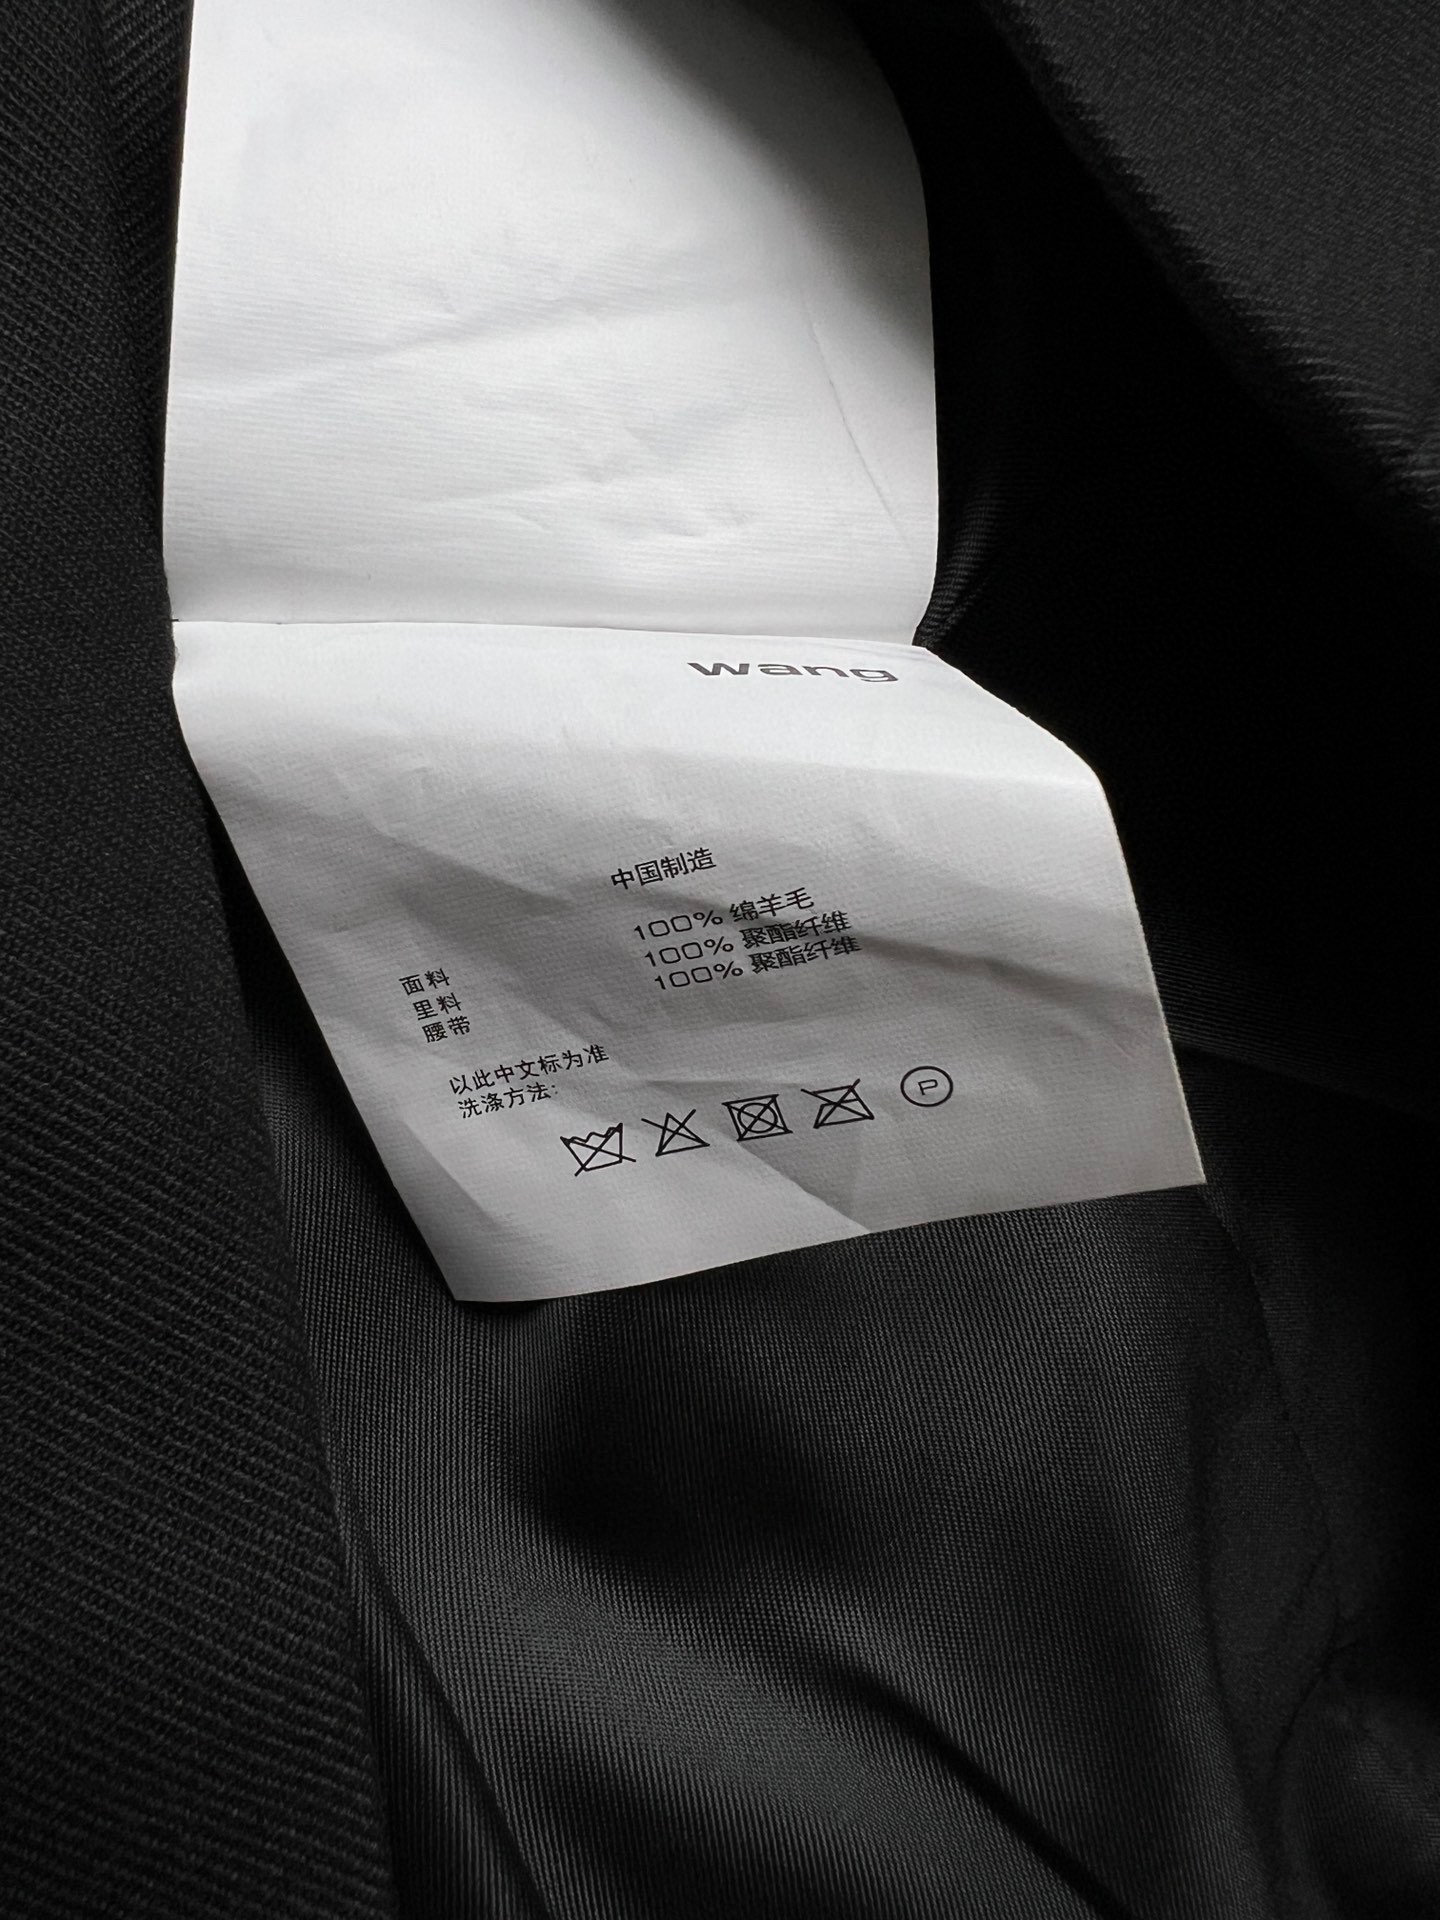 爆買い品質保証 アレキサンダーワン スーツ ユニクロコピー スカート 長袖 人気品 トップス ビジネス 通勤 ブラック_8